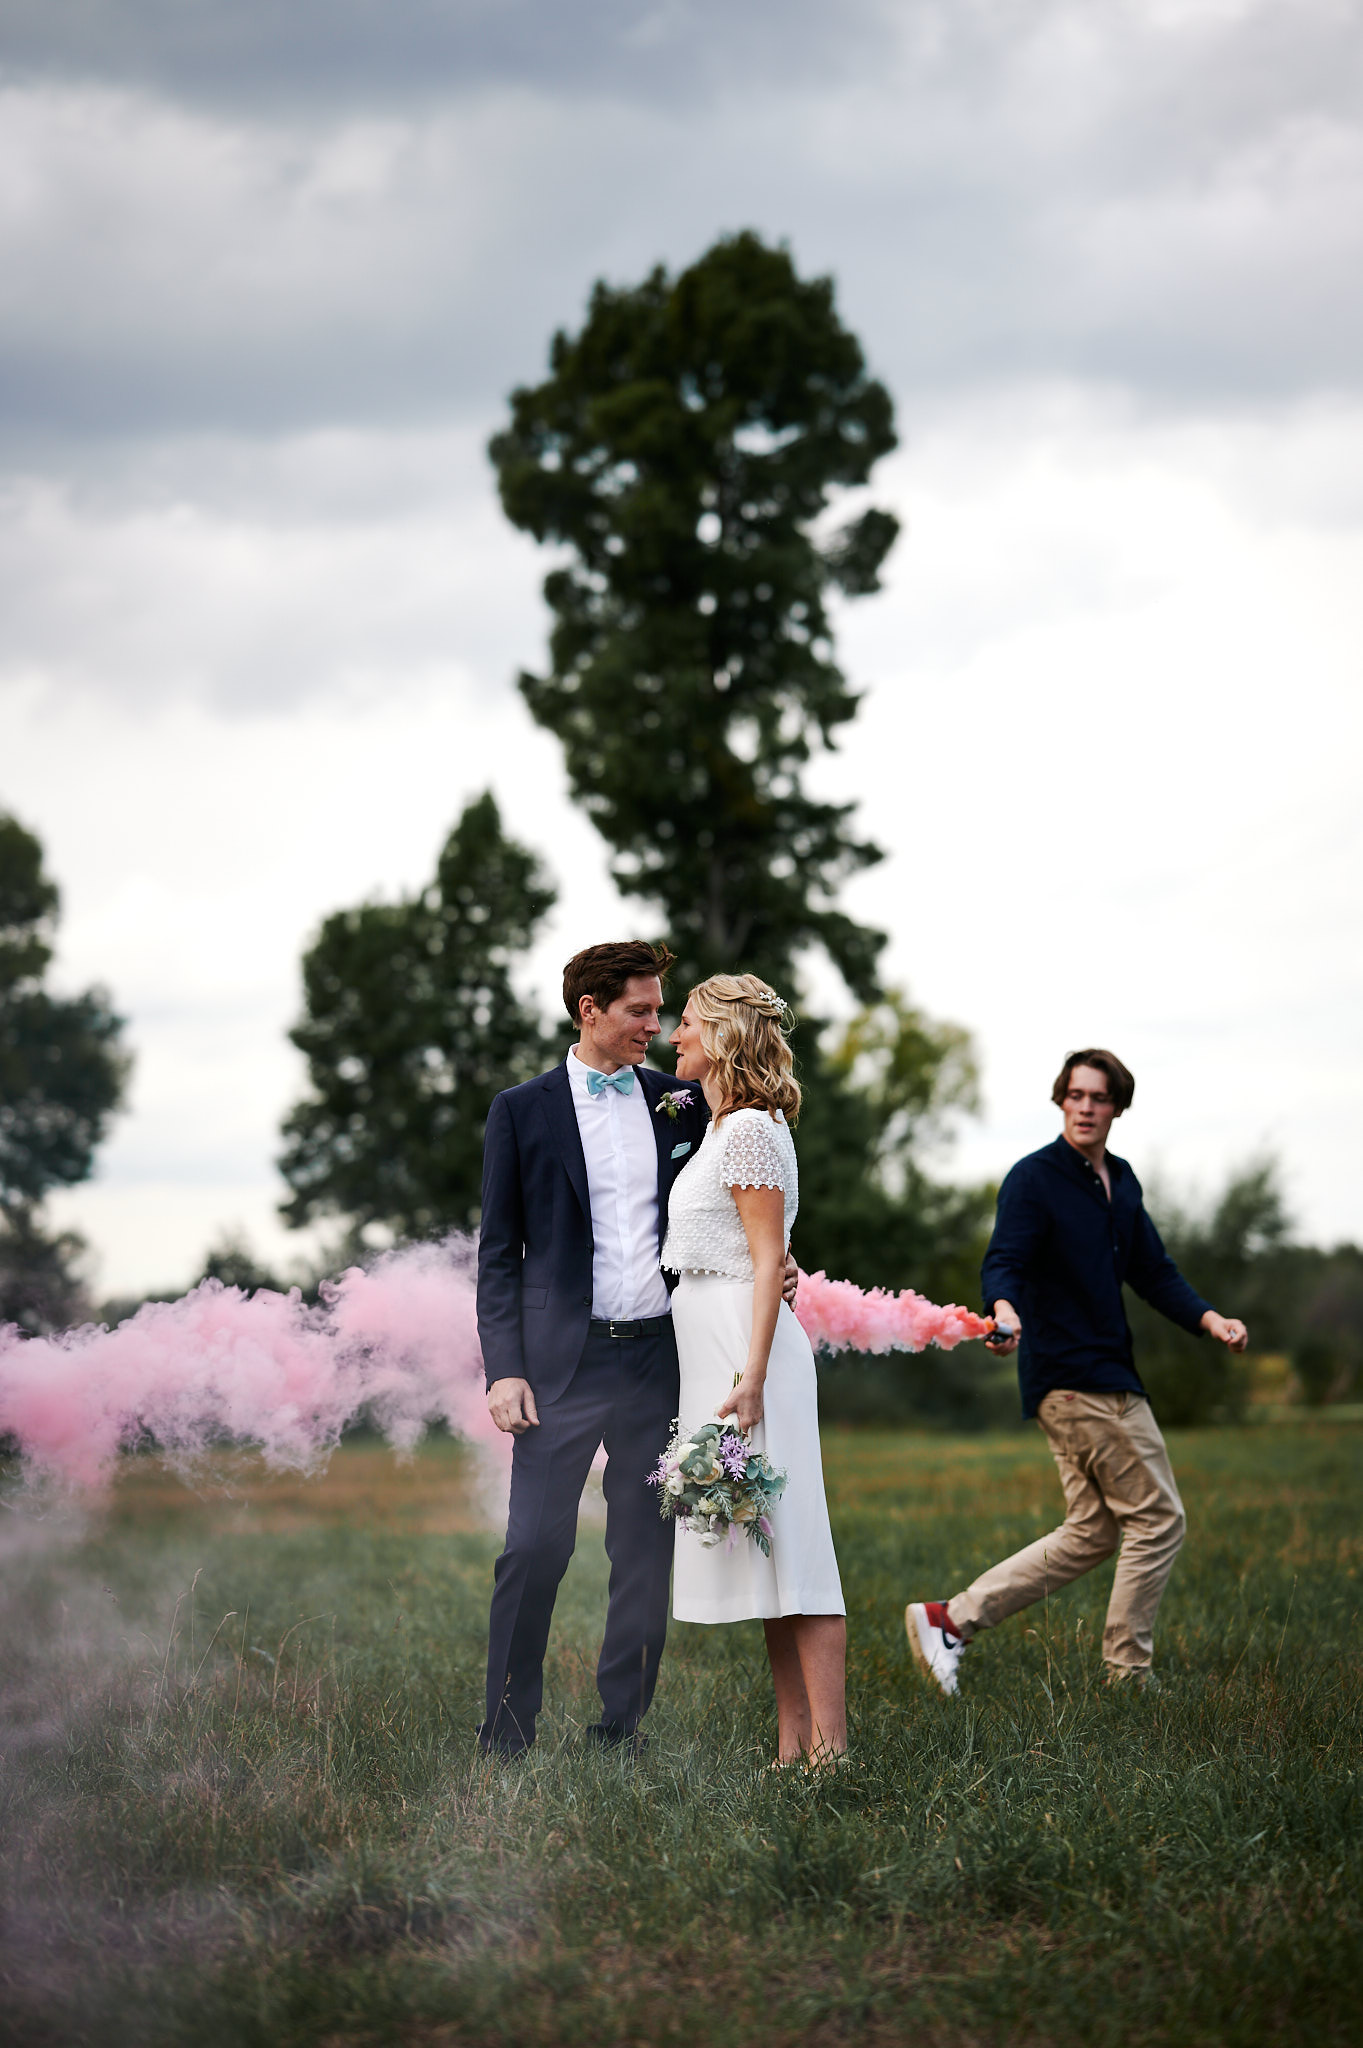 Ein Paar hält Händchen und schaut sich inmitten rosafarbenen Rauchs an, während eine andere Person im Hintergrund läuft, während ihrer Hochzeit auf Schloss Wissen.